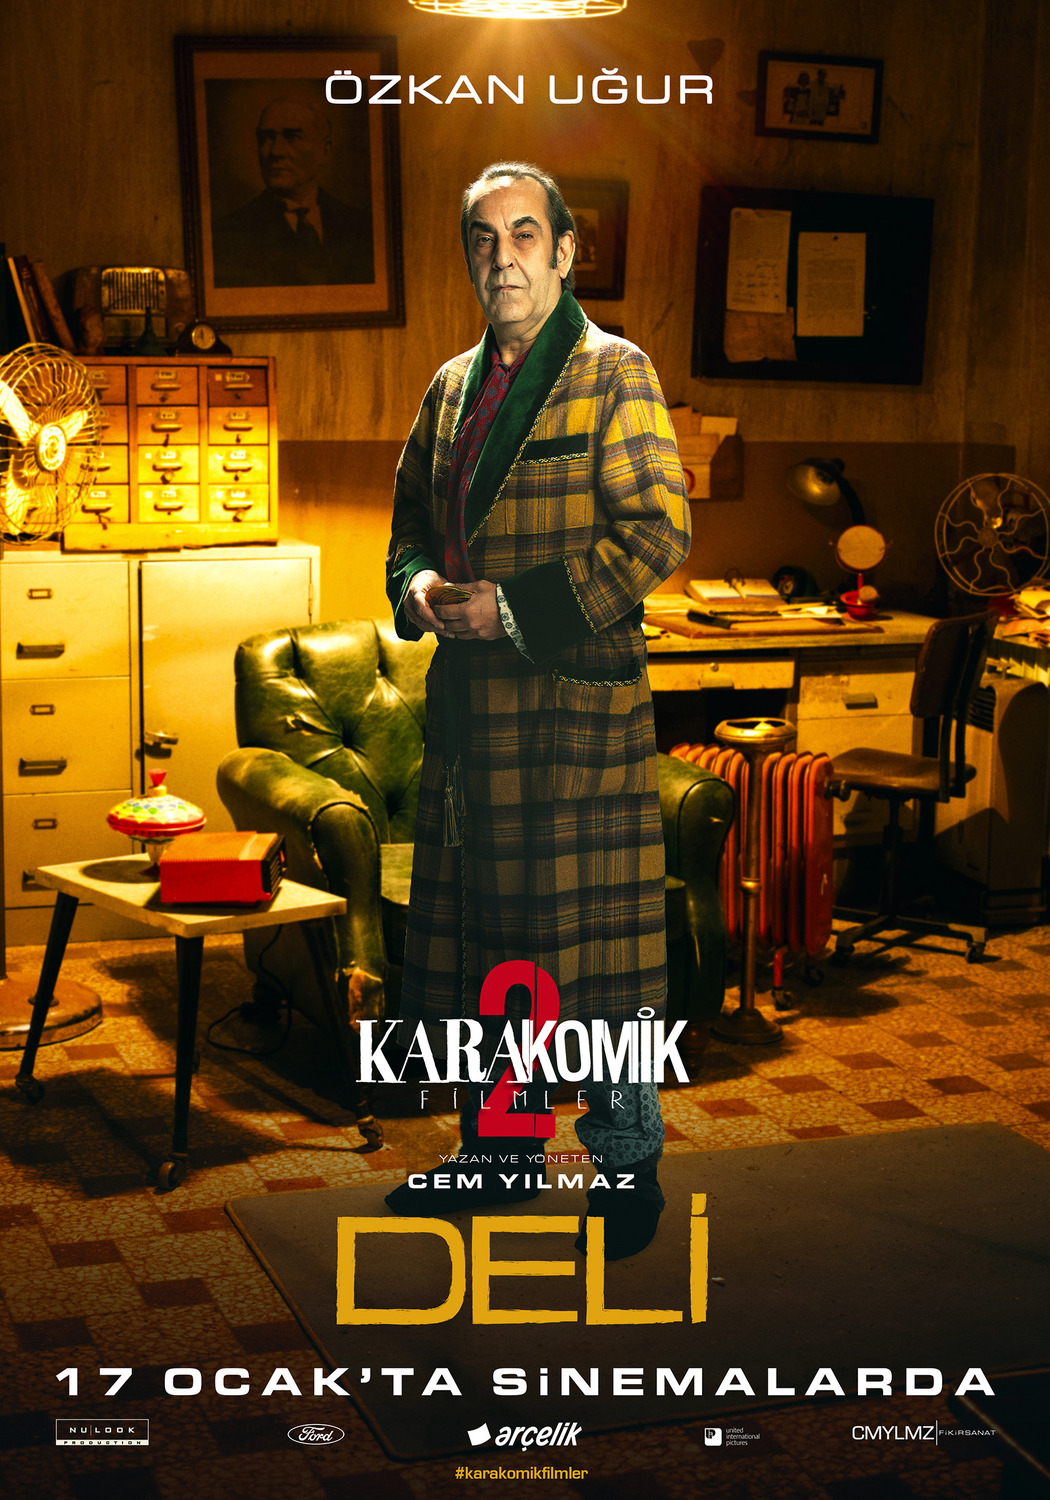 Extra Large Movie Poster Image for Karakomik Filmler: Deli (#5 of 6)